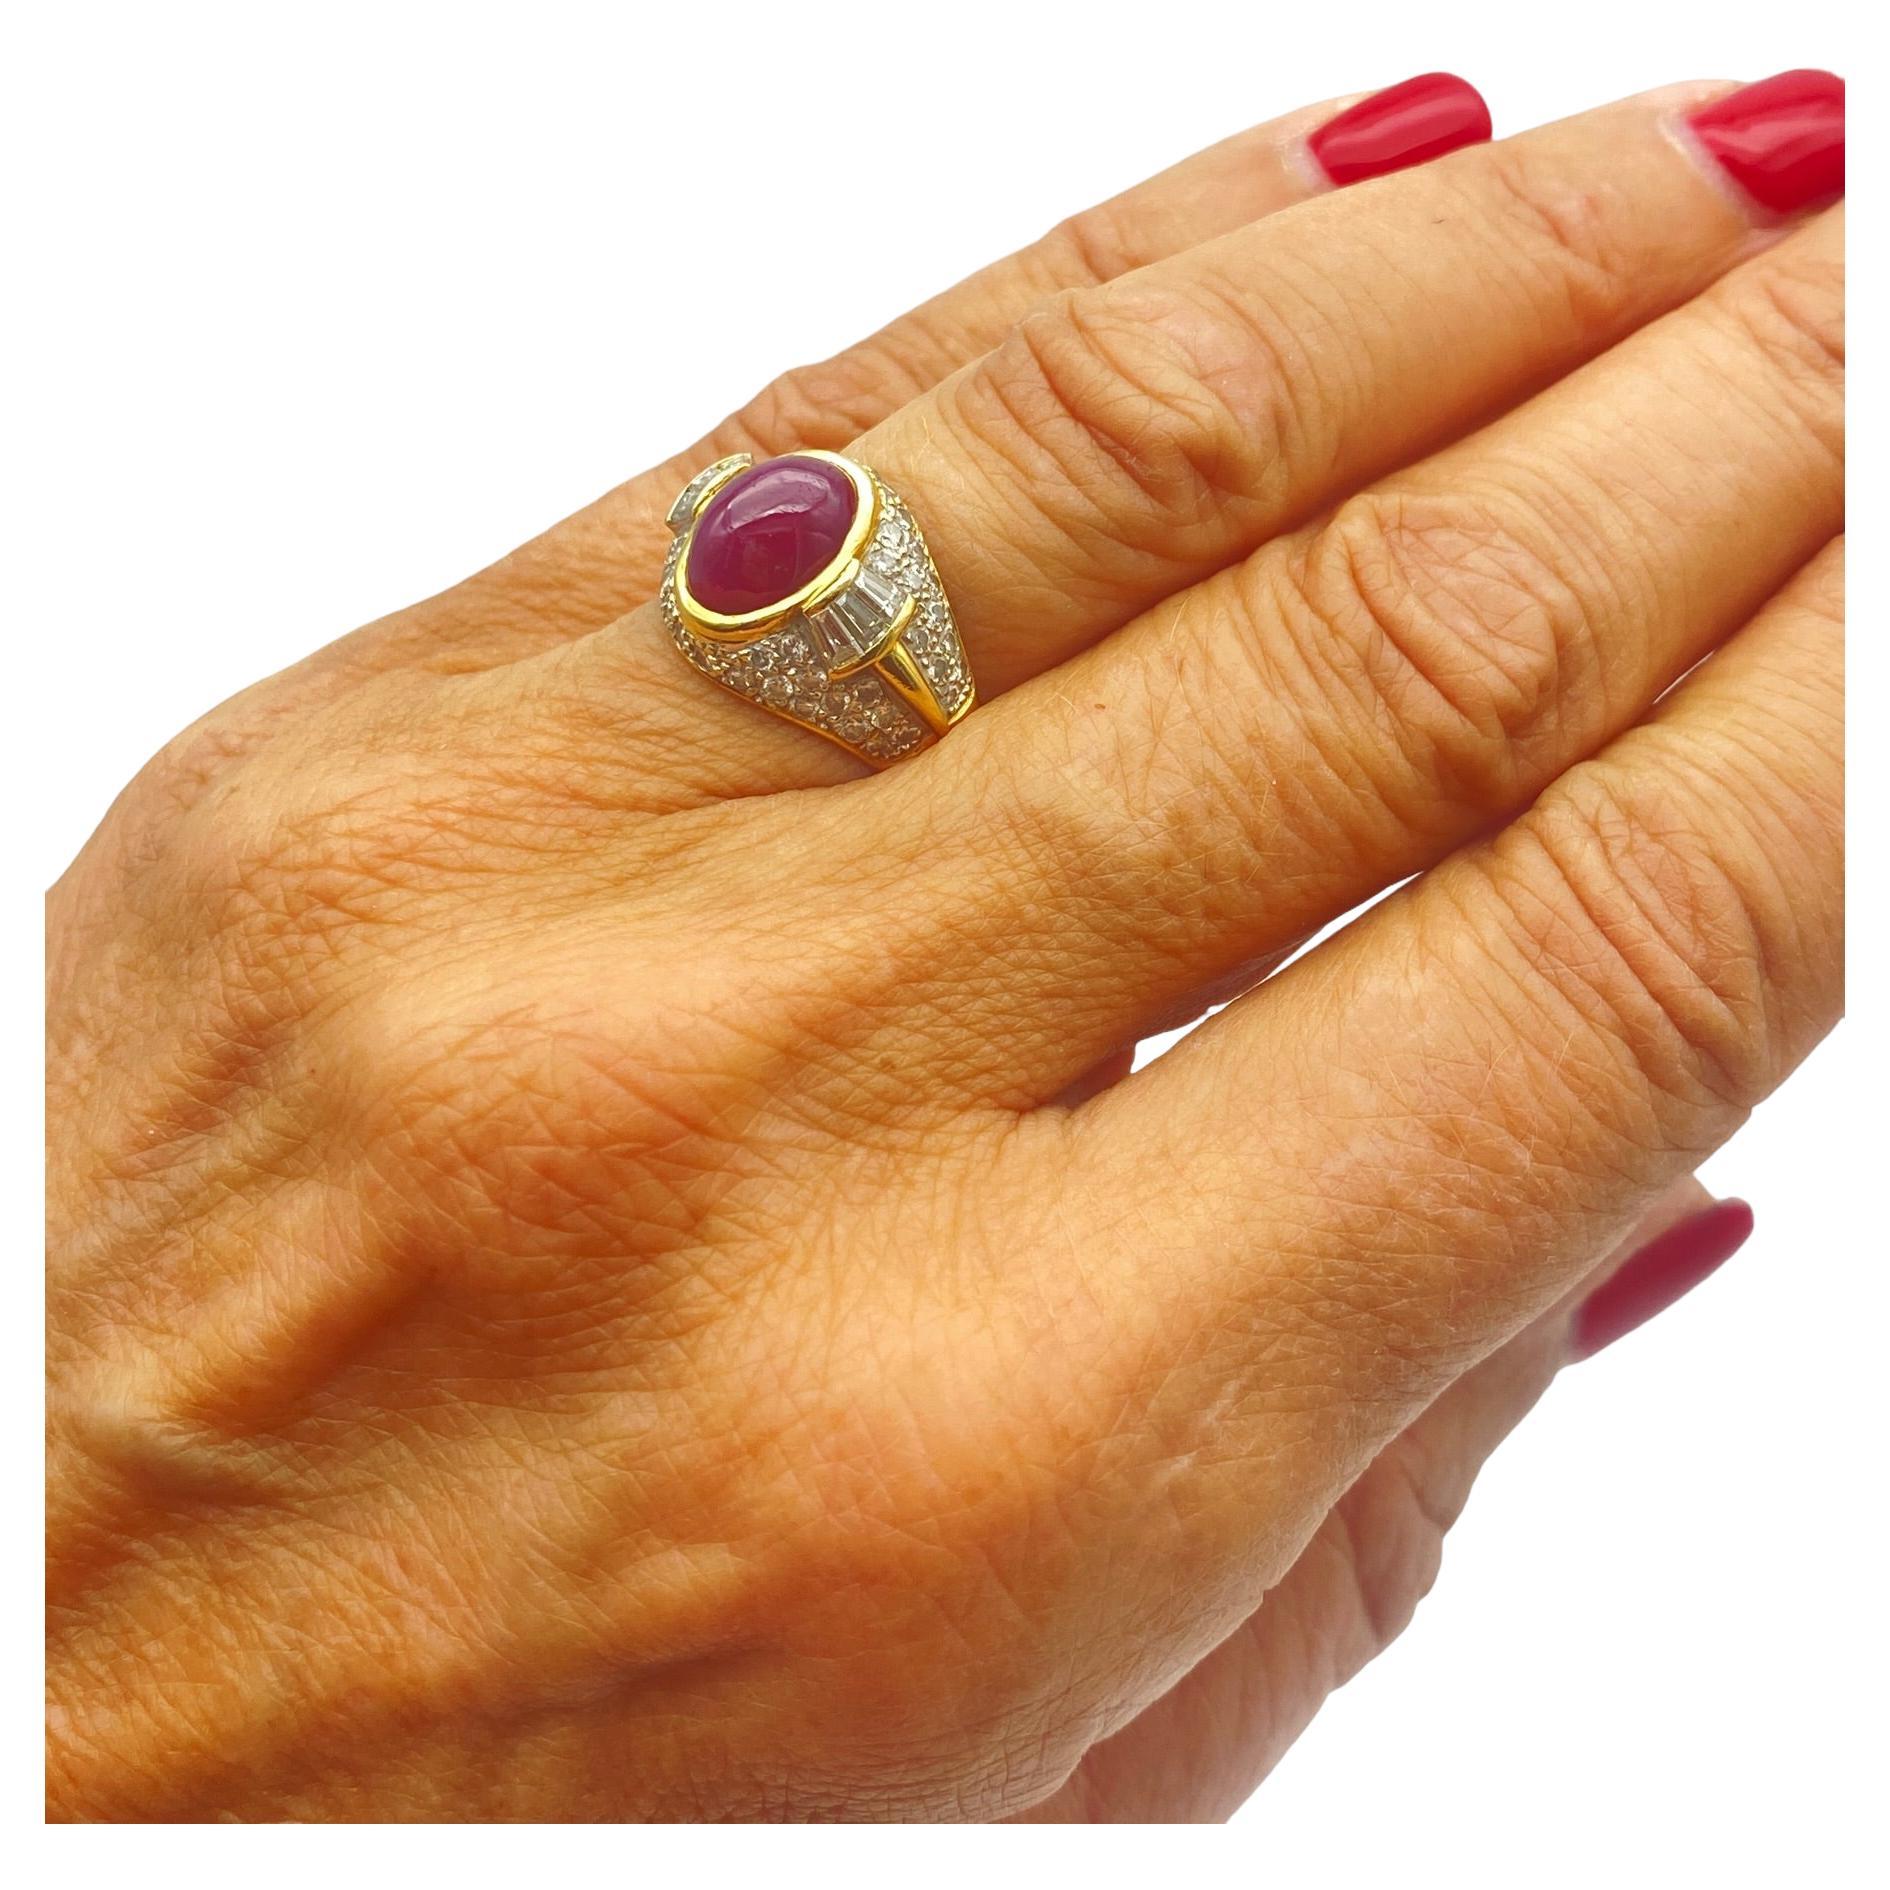 Der exquisite Kuppelring zeigt einen ovalen roten Rubin in Cabochonform, umgeben von Diamanten. Der Ring ist an der Spitze 14,30 mm breit und geht in einen 4,80 mm breiten Schaft über. Der Rubin hat einen Durchmesser von 10 x 8 x 5 mm und wird auf